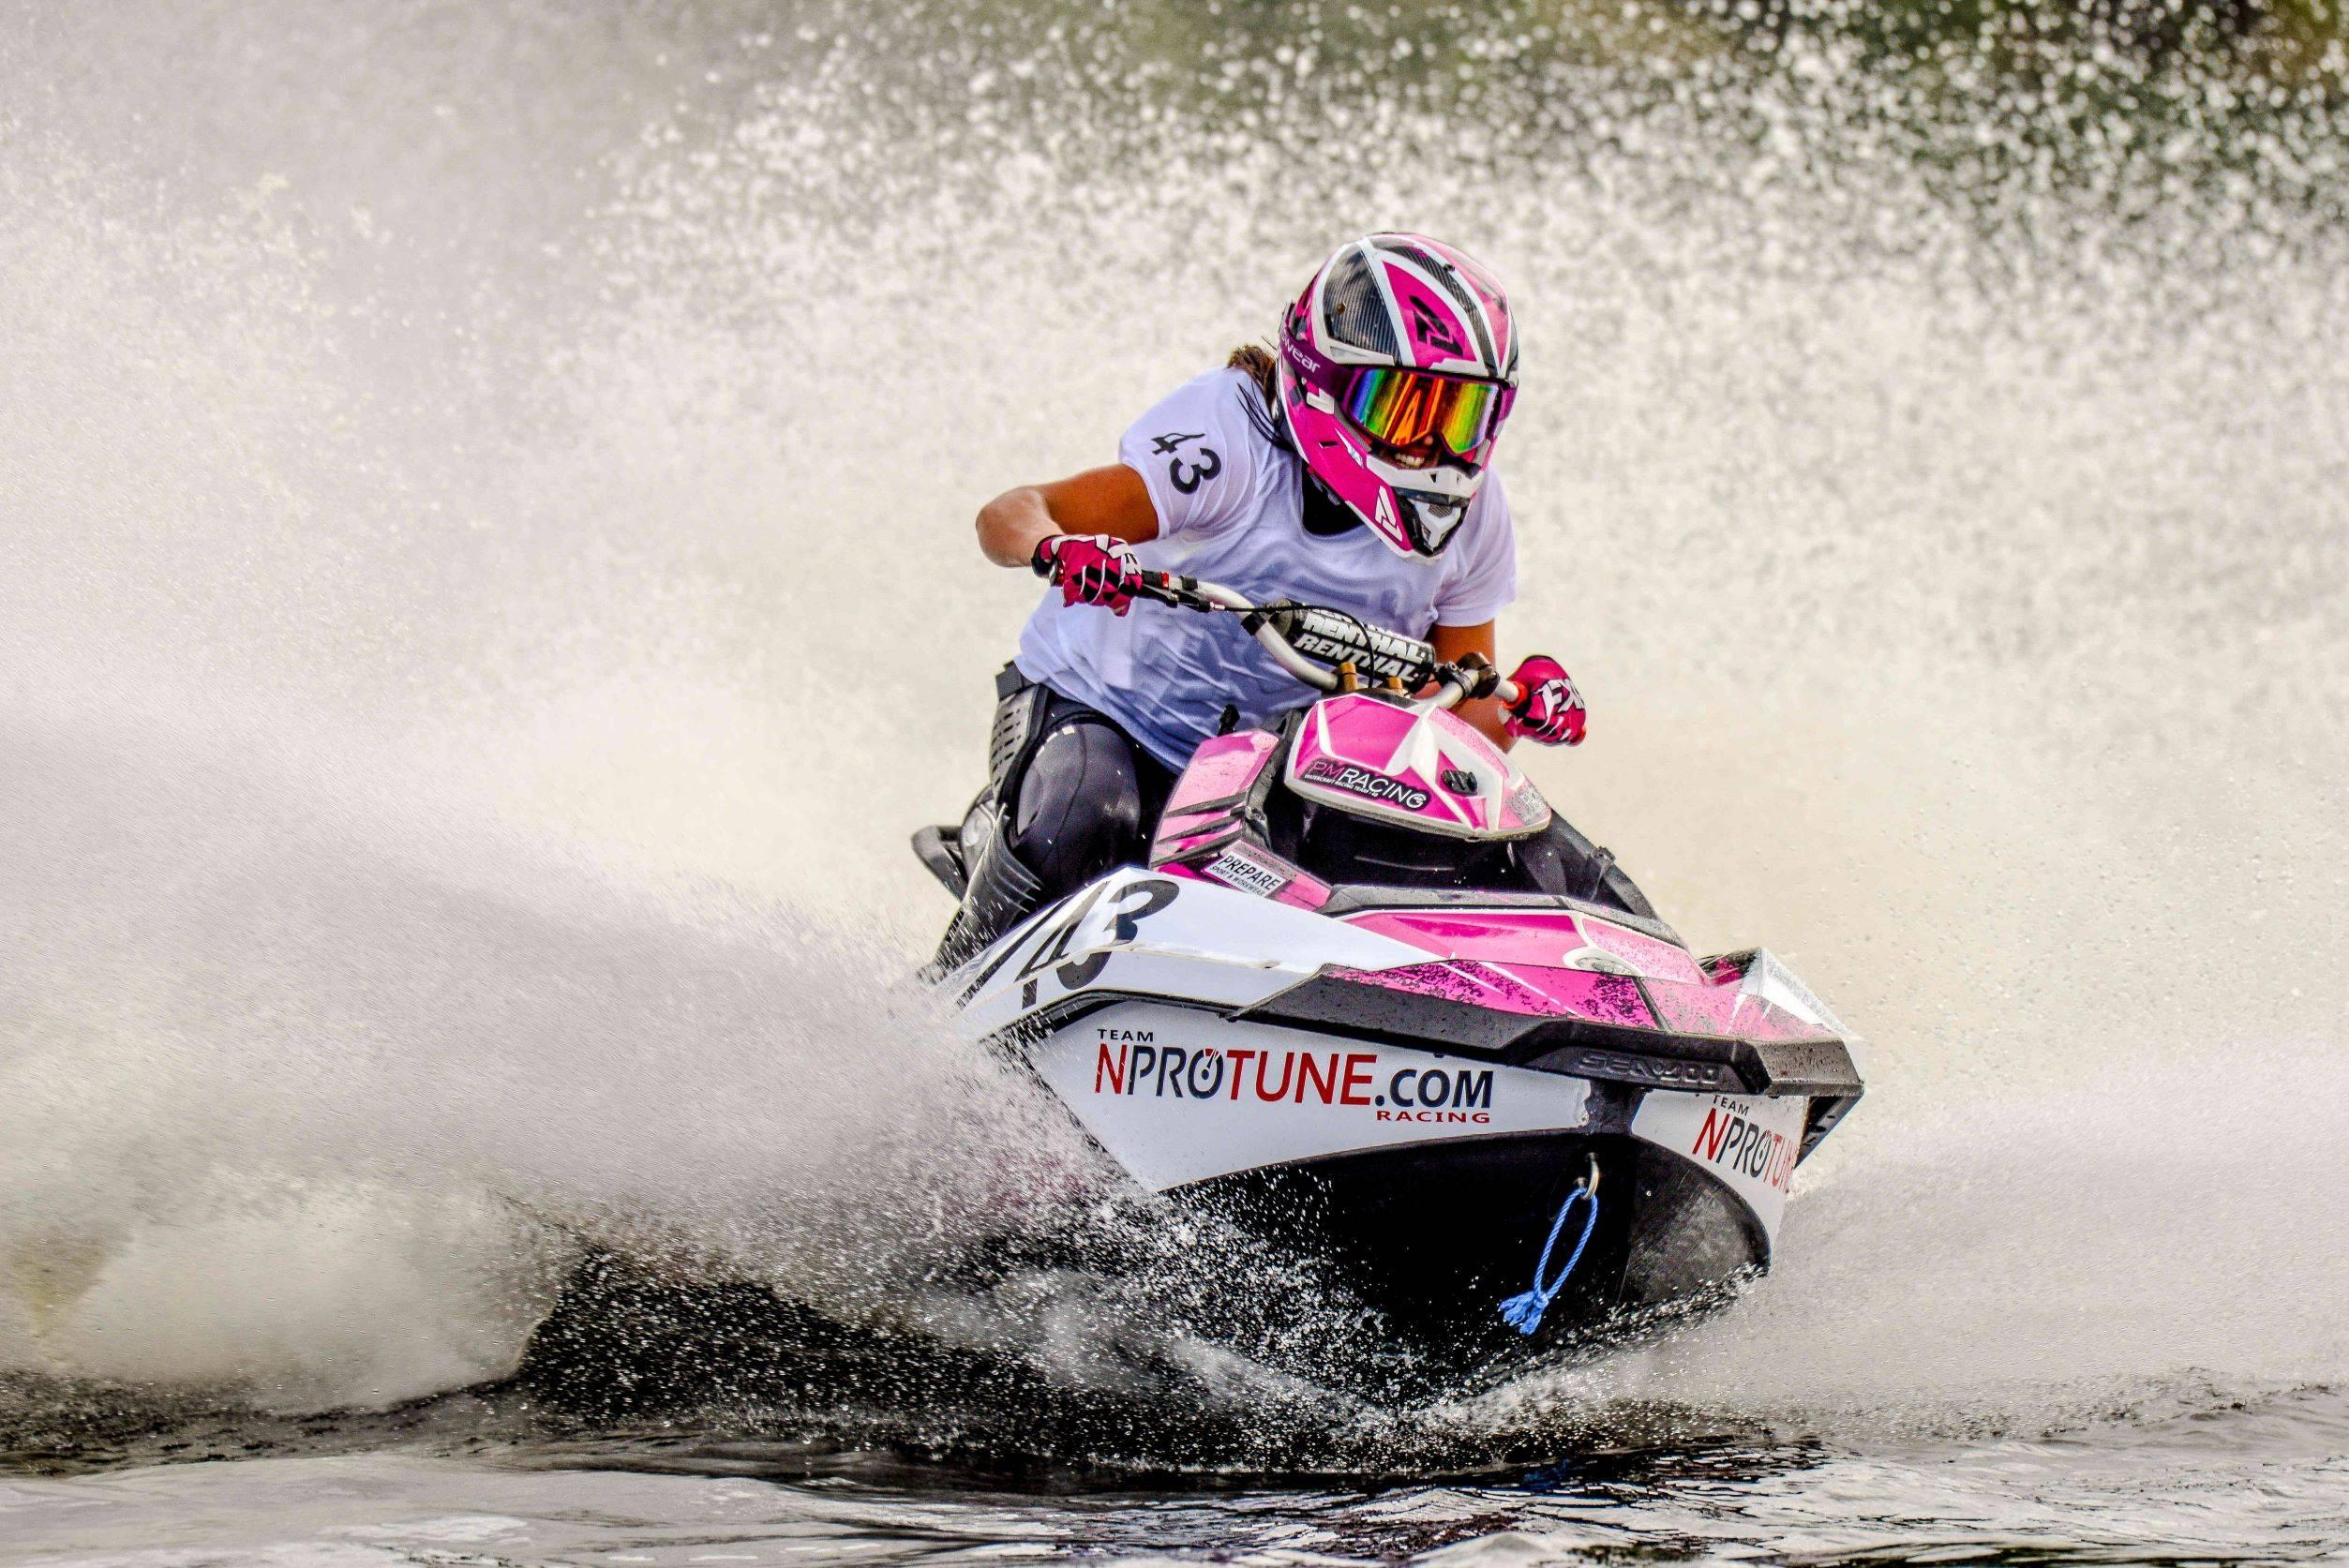 Rosa vattenskoter i full fart fart med en leende aquabikeförare på sadeln